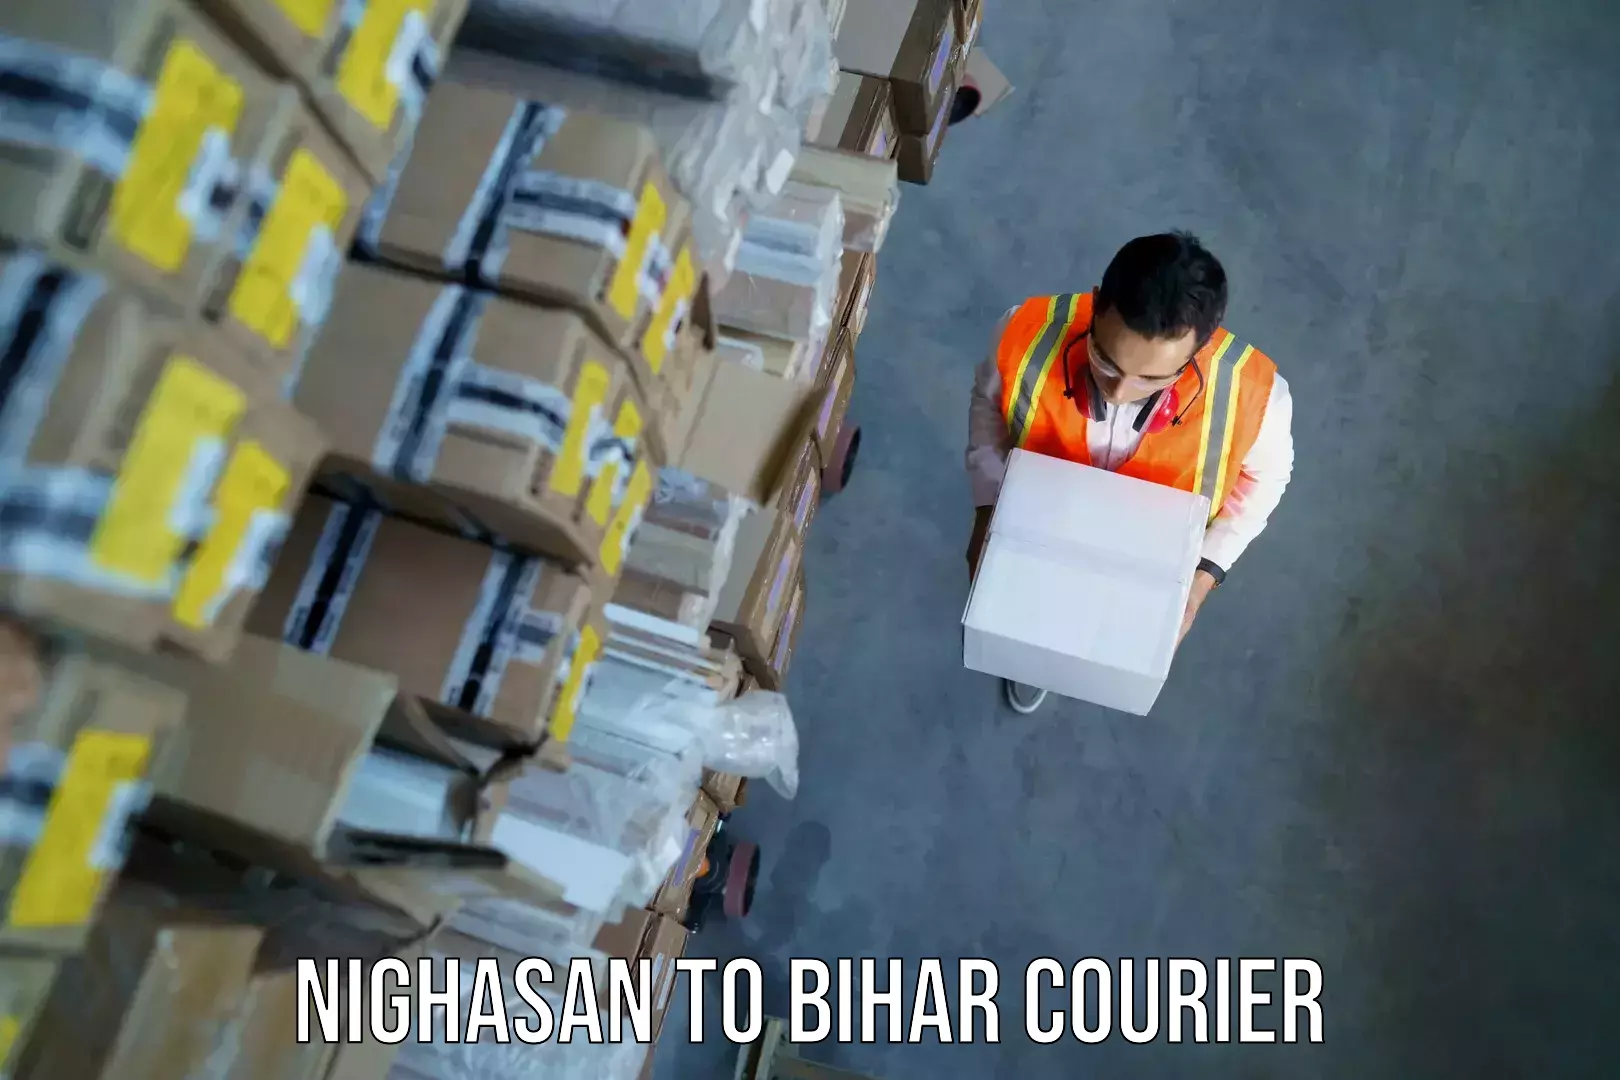 Baggage transport services Nighasan to Bihar